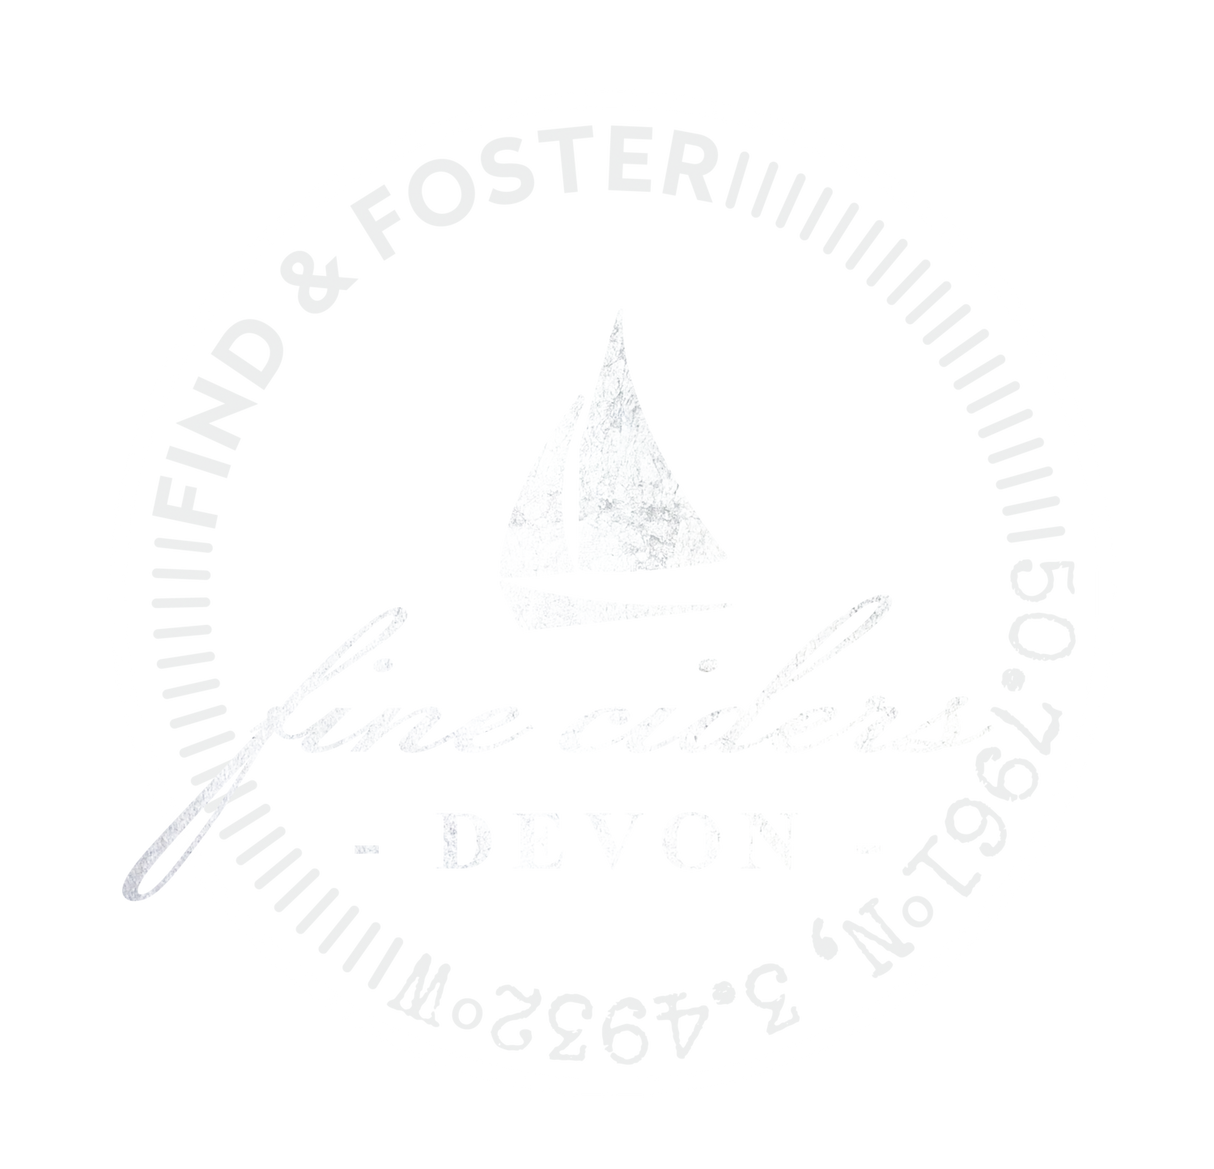 Find & Foster Fine Cider Blend Huxham 2017 4% (750ml)-Hop Burns & Black